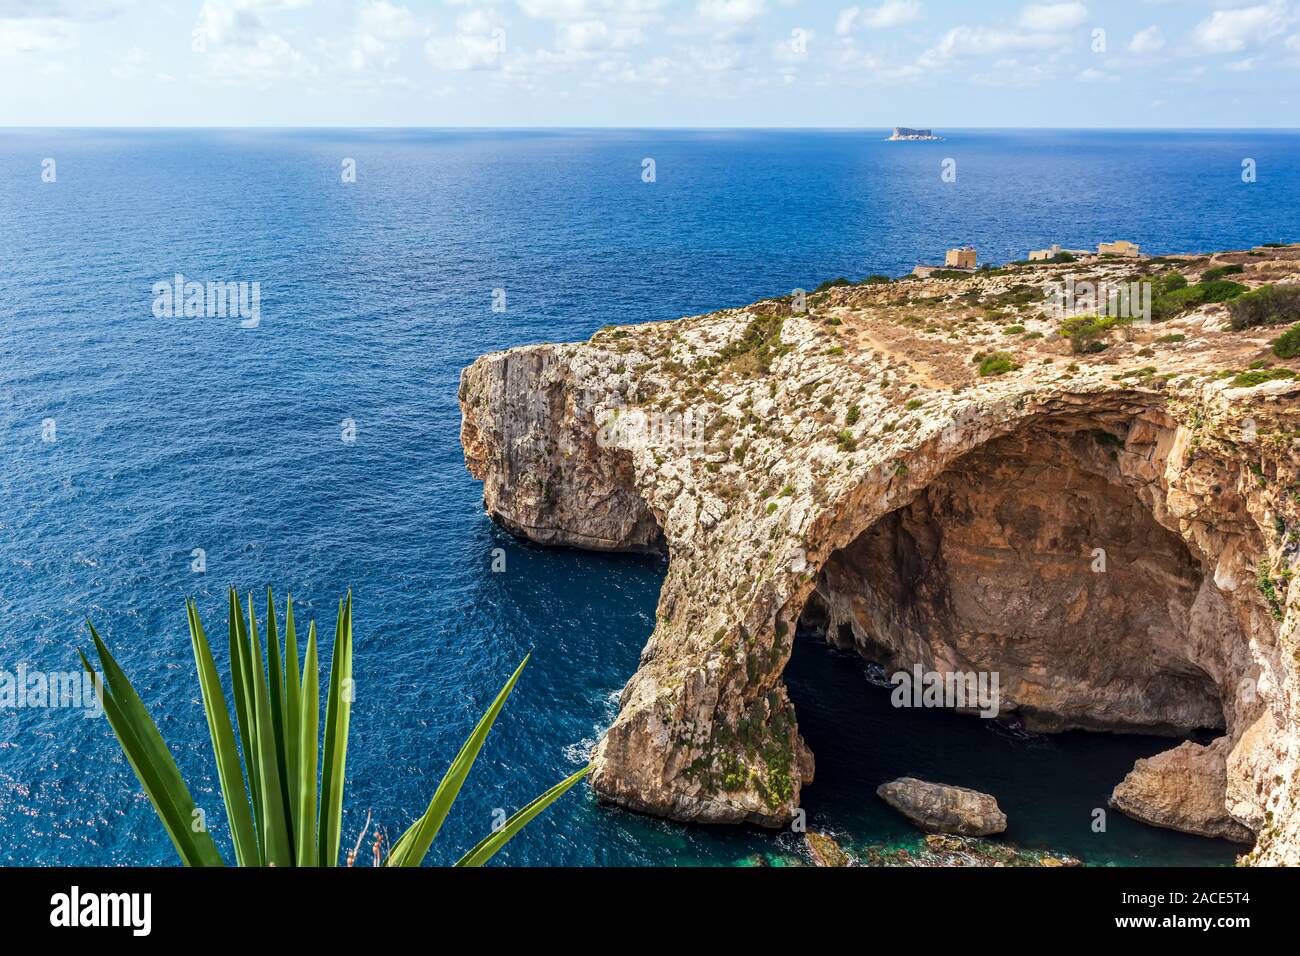 La Grotta blu e grotte marine in Malta, con impianto in primo piano e Hamrija torre di avvistamento in background Foto Stock